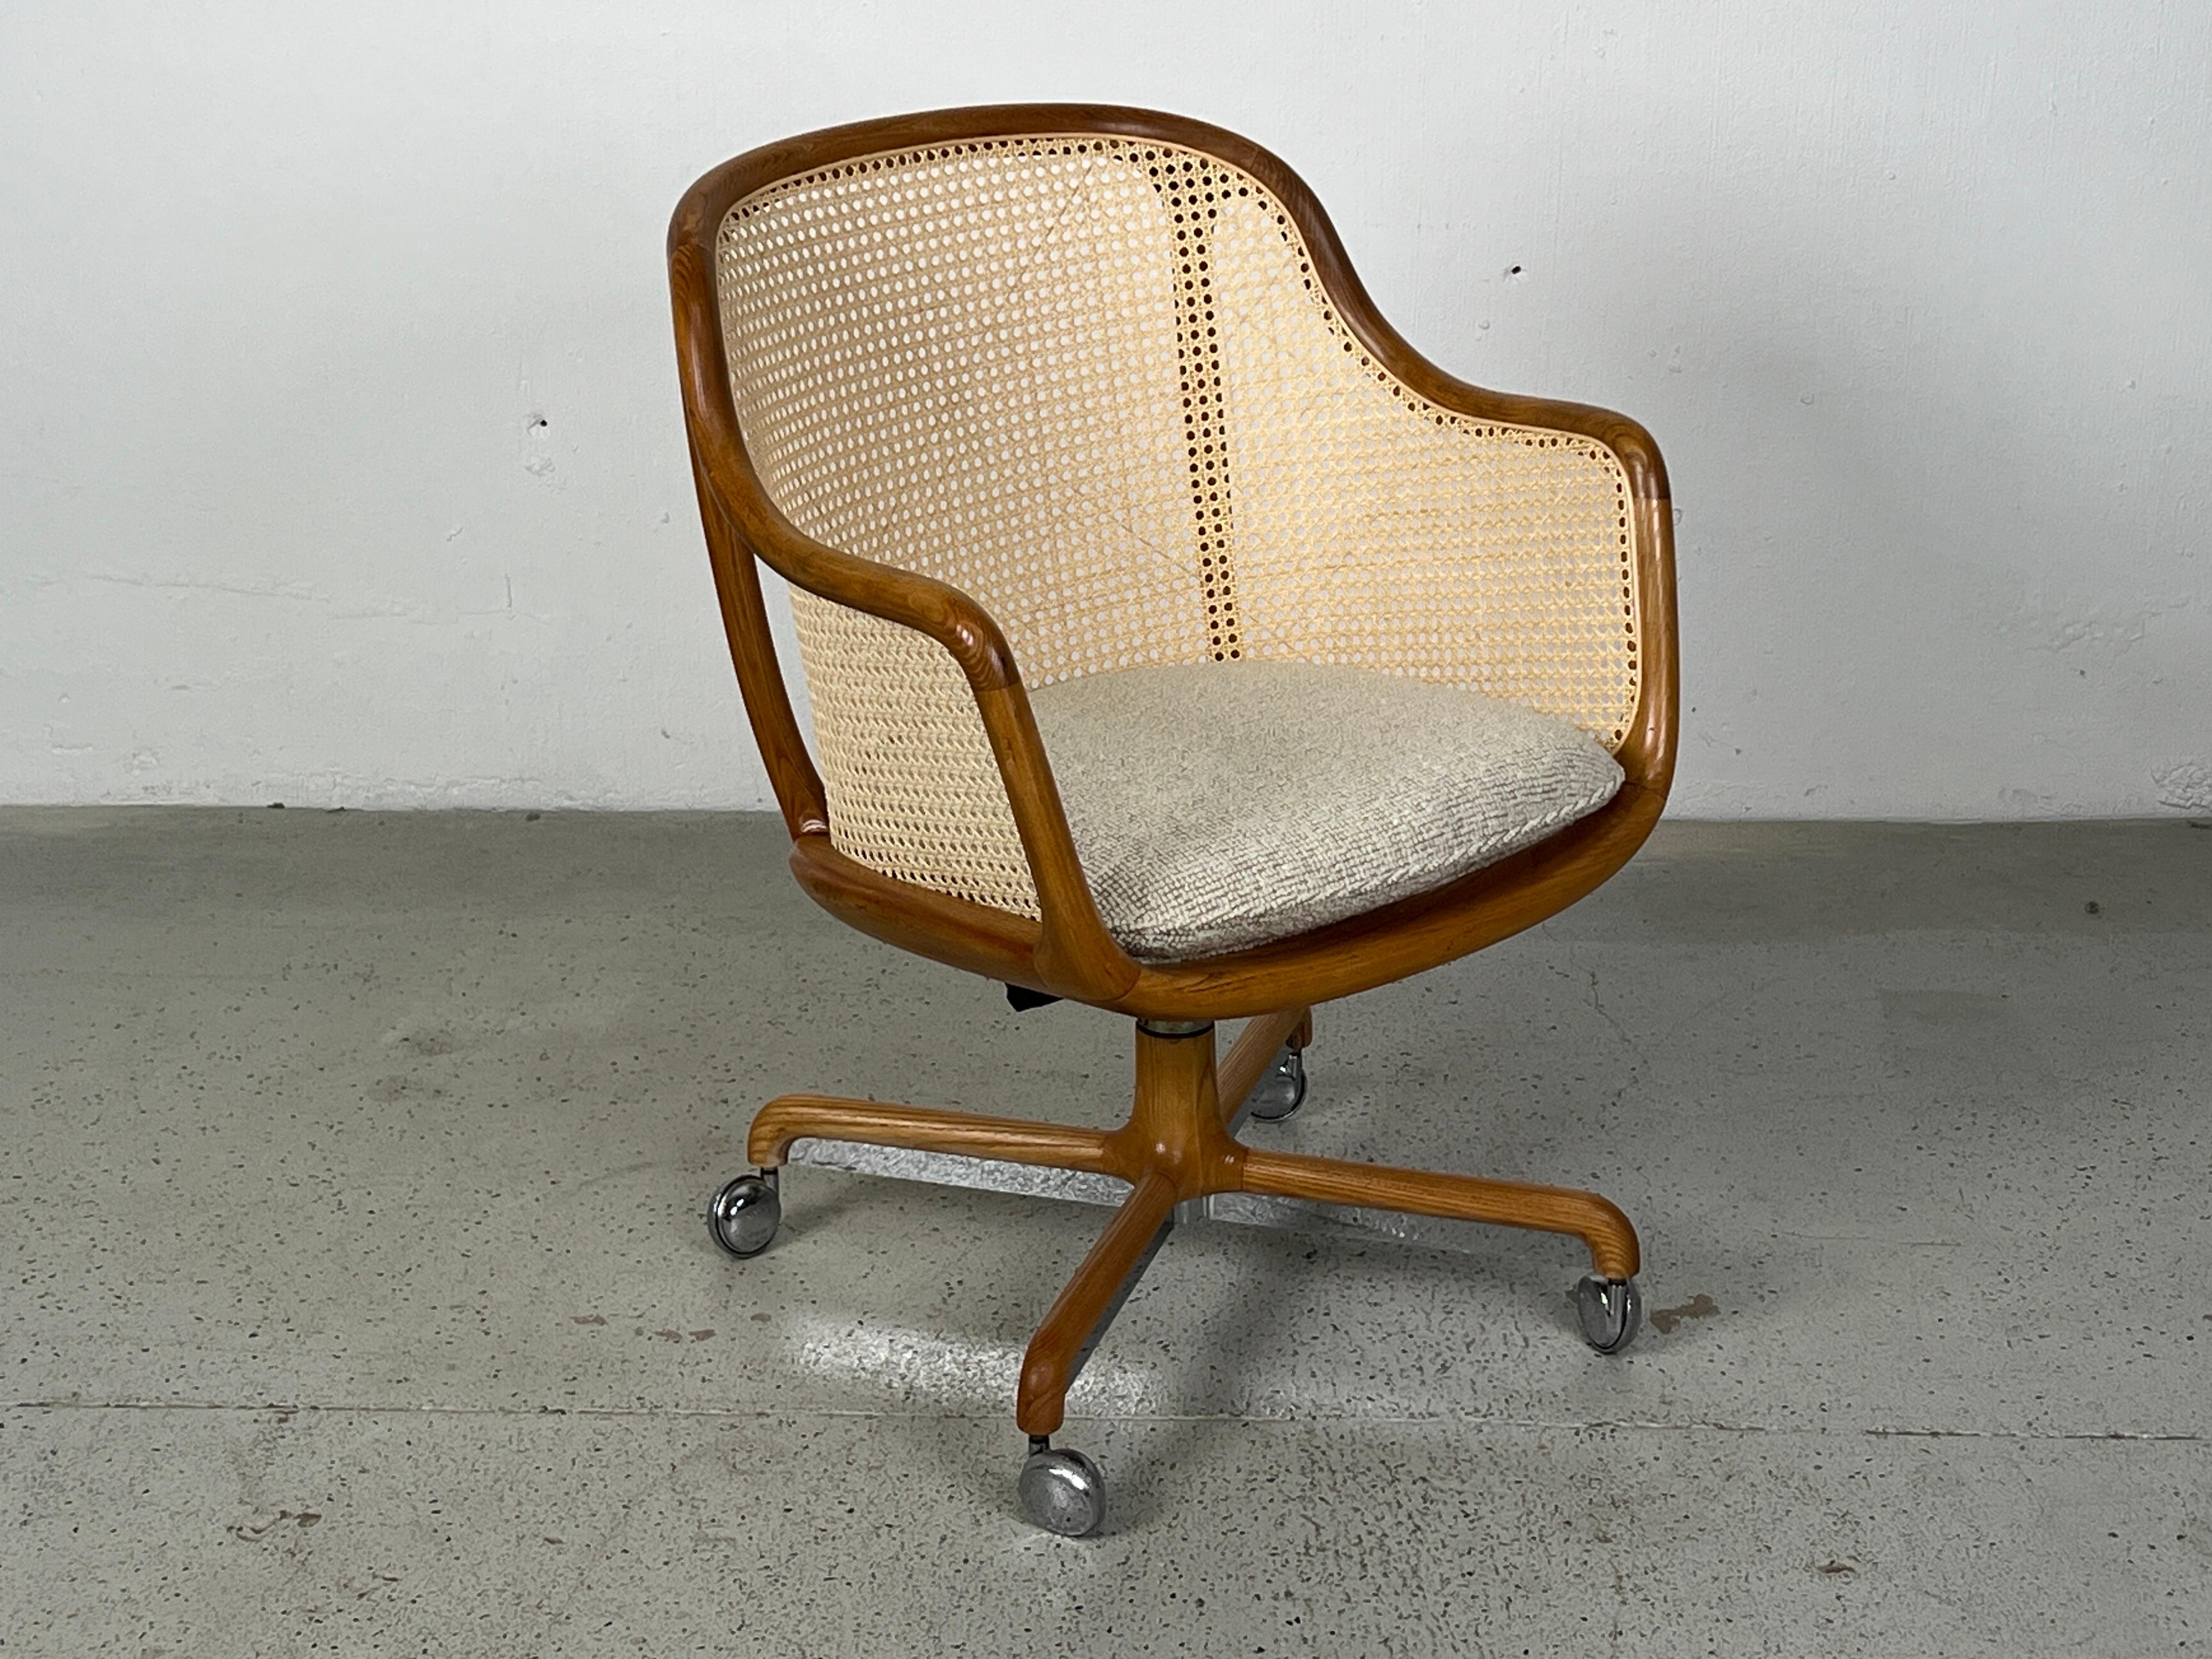 A fully caned tilt / swivel desk chair designed by Ward Bennett for Brickel.